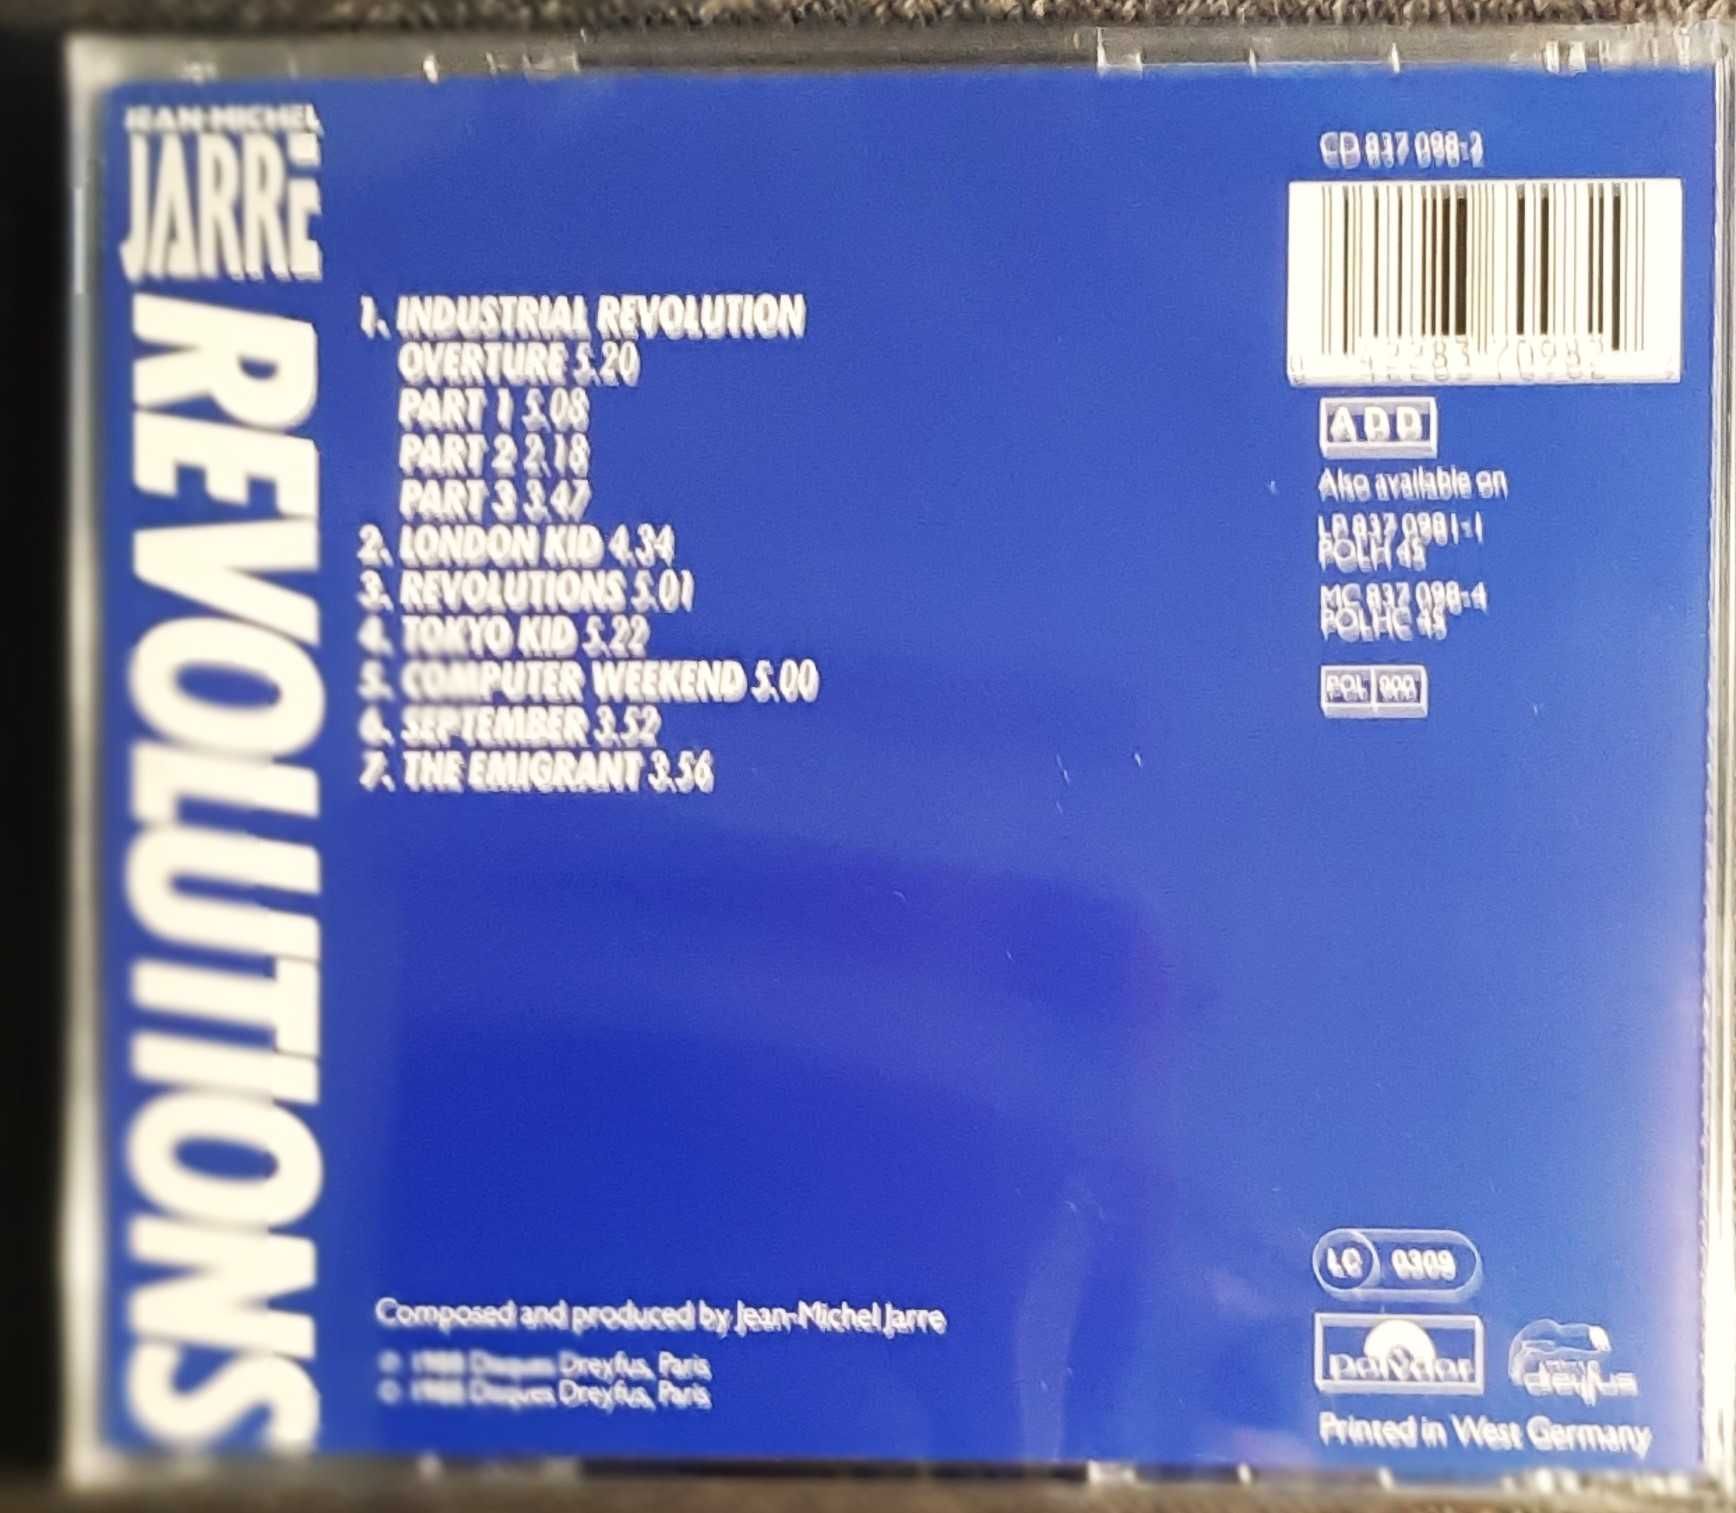 Polecam Album CD  JEAN MICHEL JARRE    -Album Revolutions